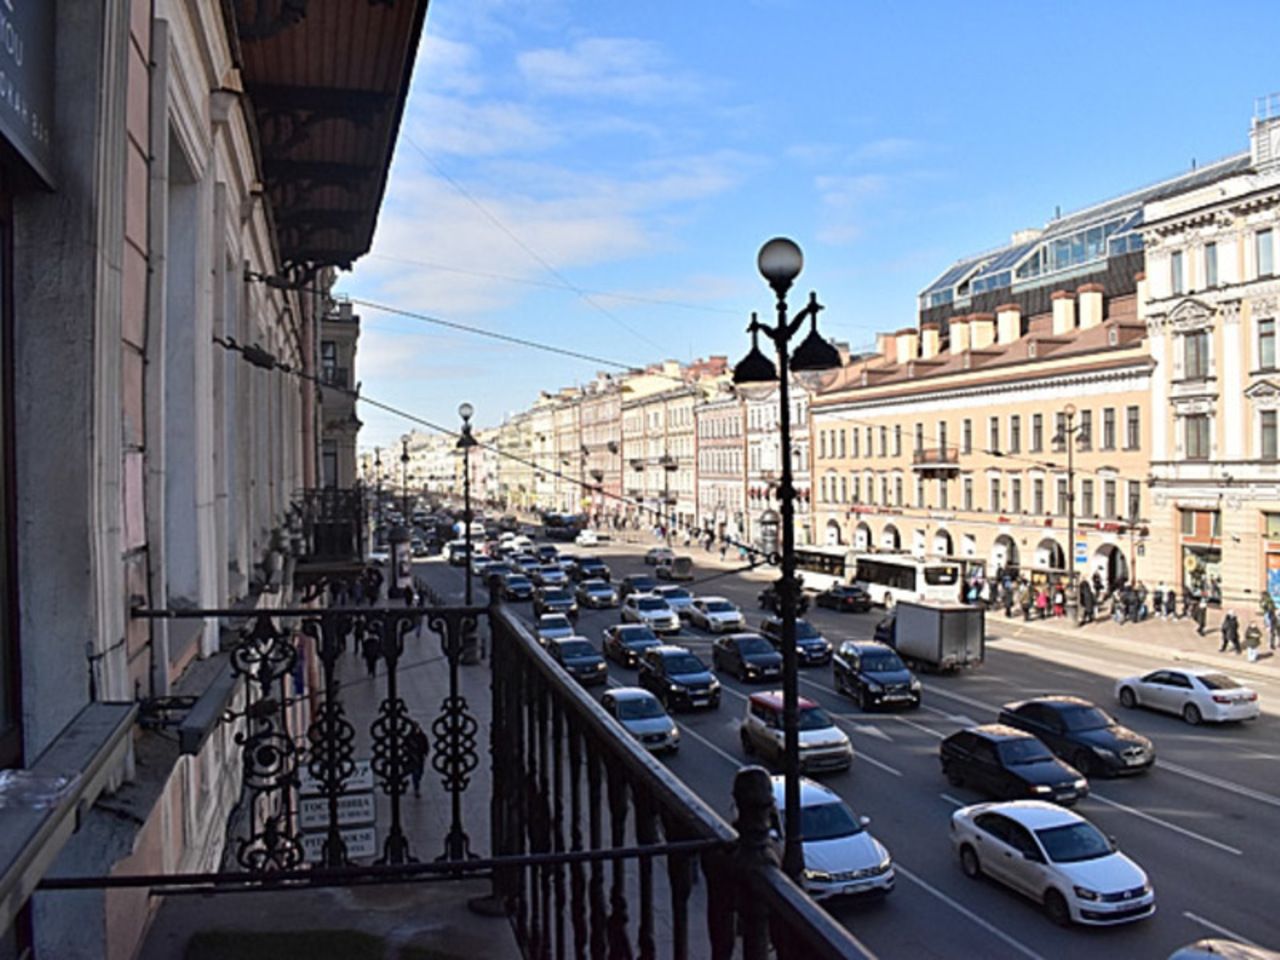 ЮНЕСКО раскритиковала «посредственную архитектуру» новых зданий в историческом центре Петербурга